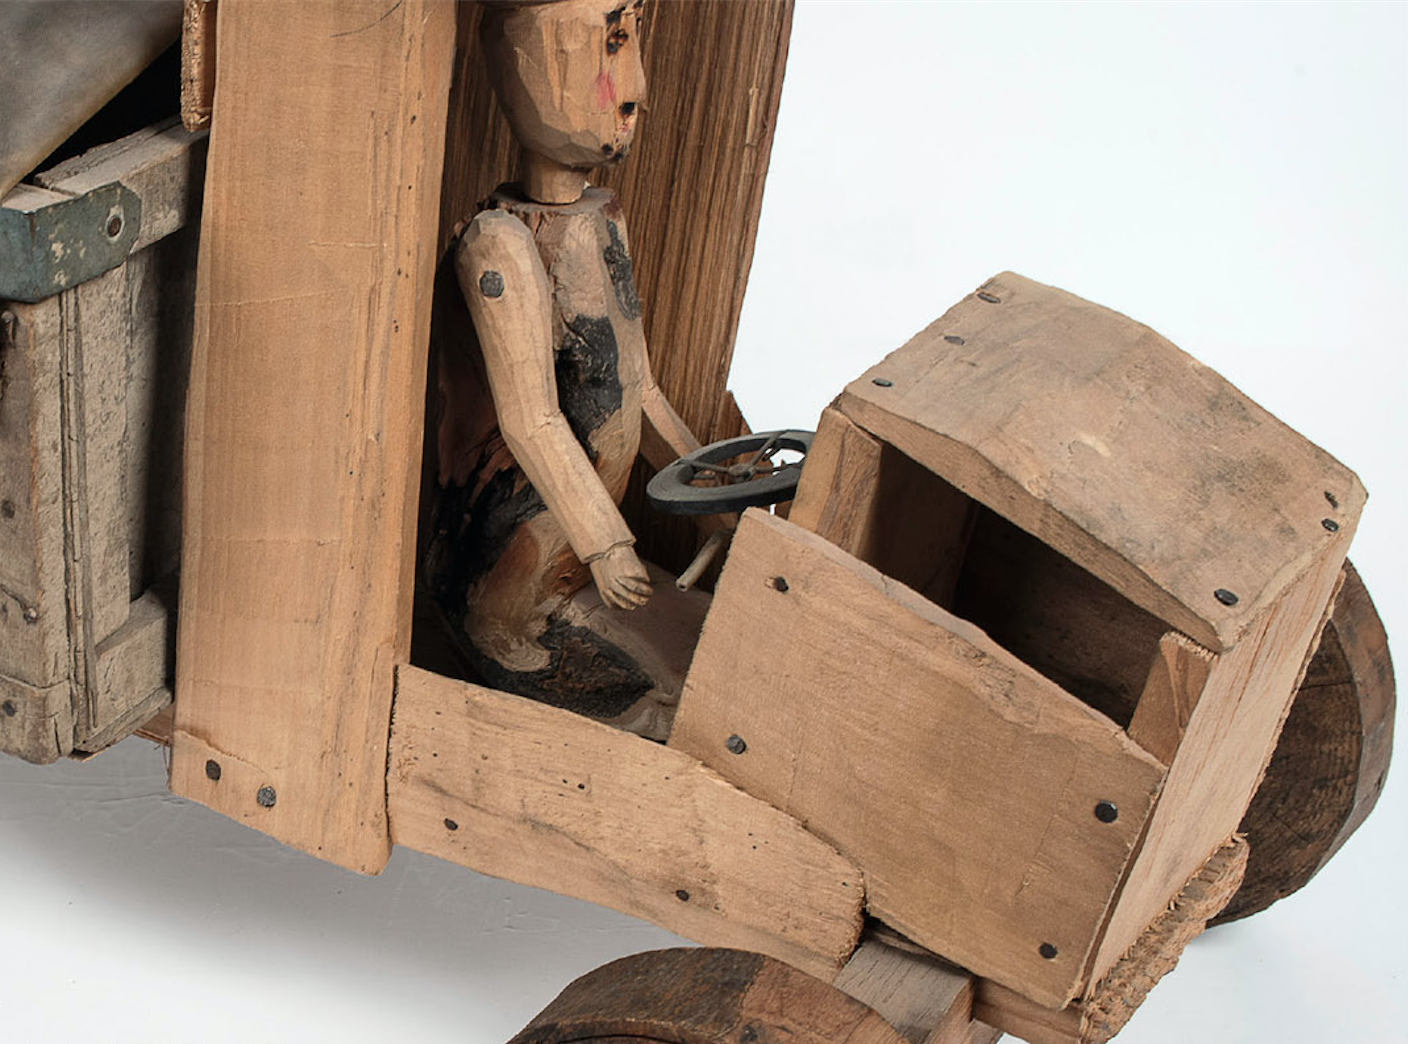 Zdjęcie obiektu Truposznica - drewnianego samochodu o rozmiarach zabawki